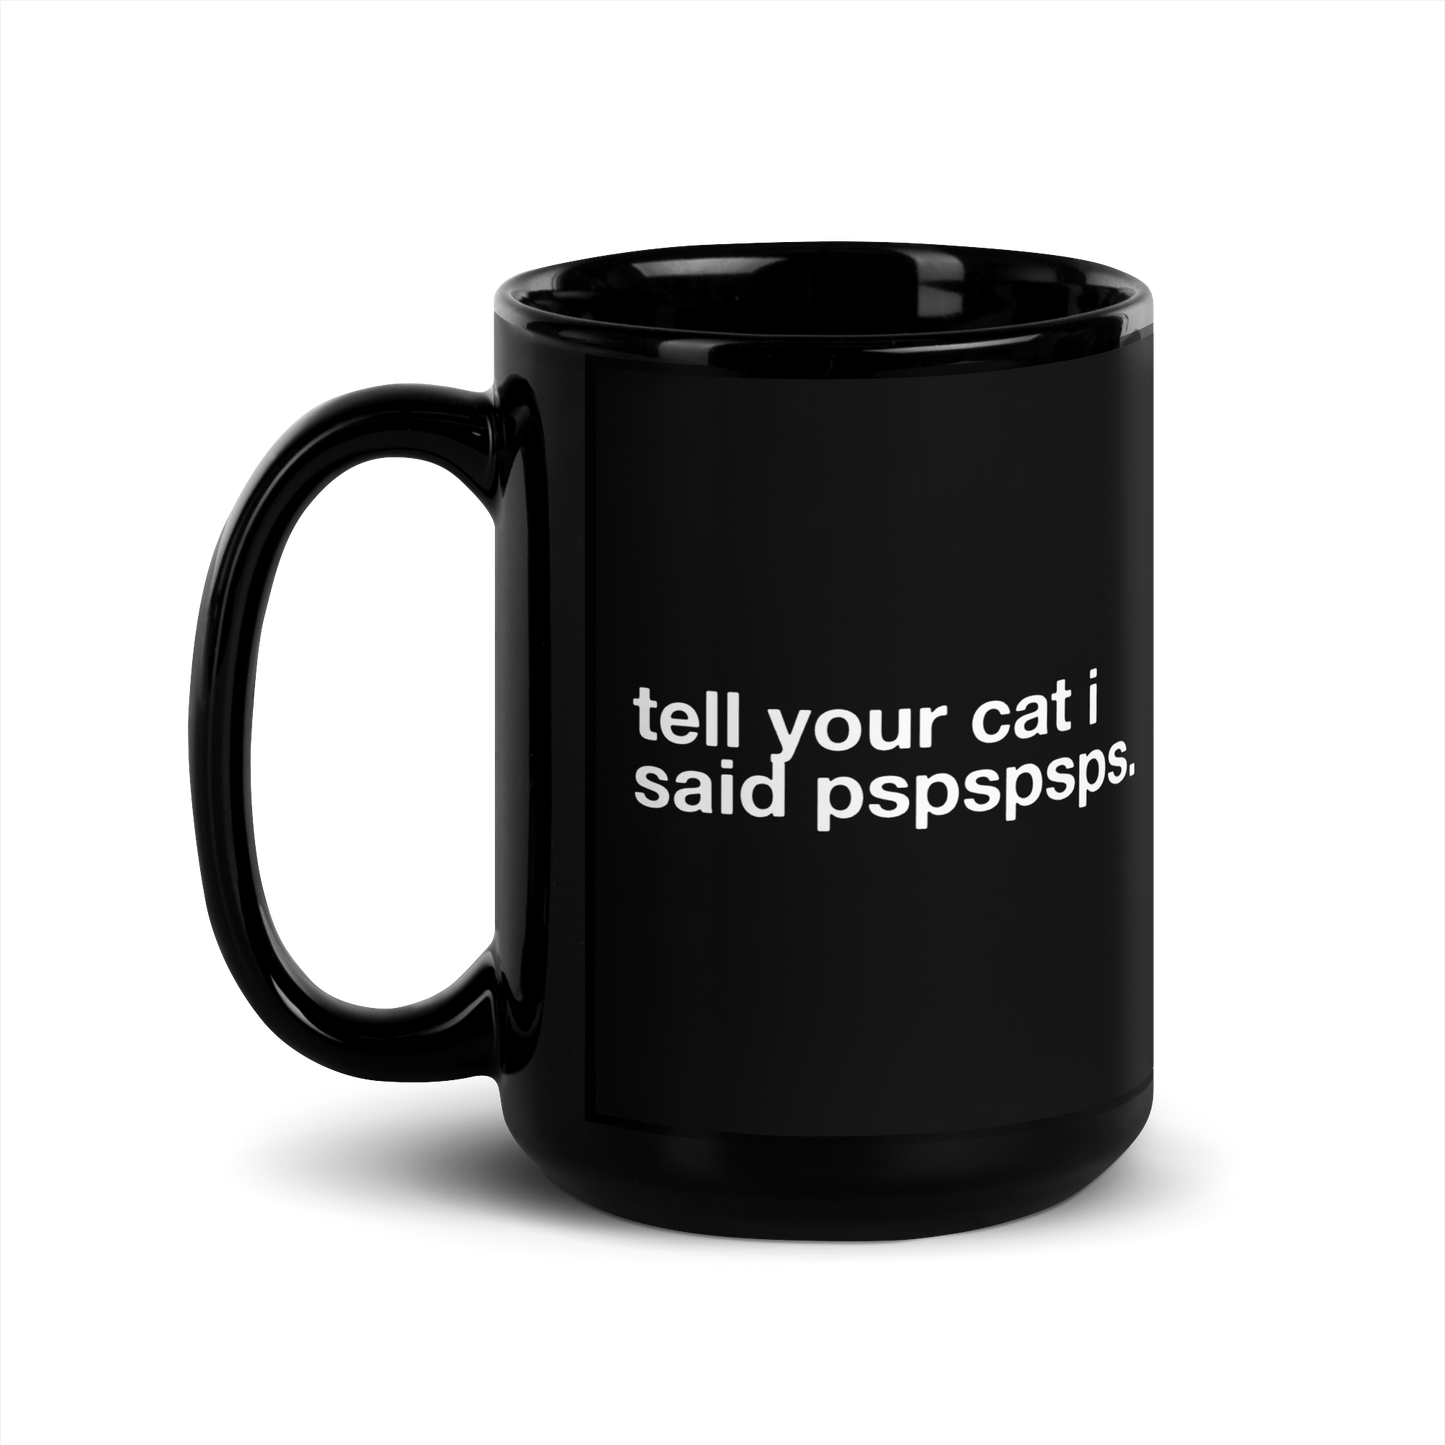 tell your cat i said pspspsps. - Mug